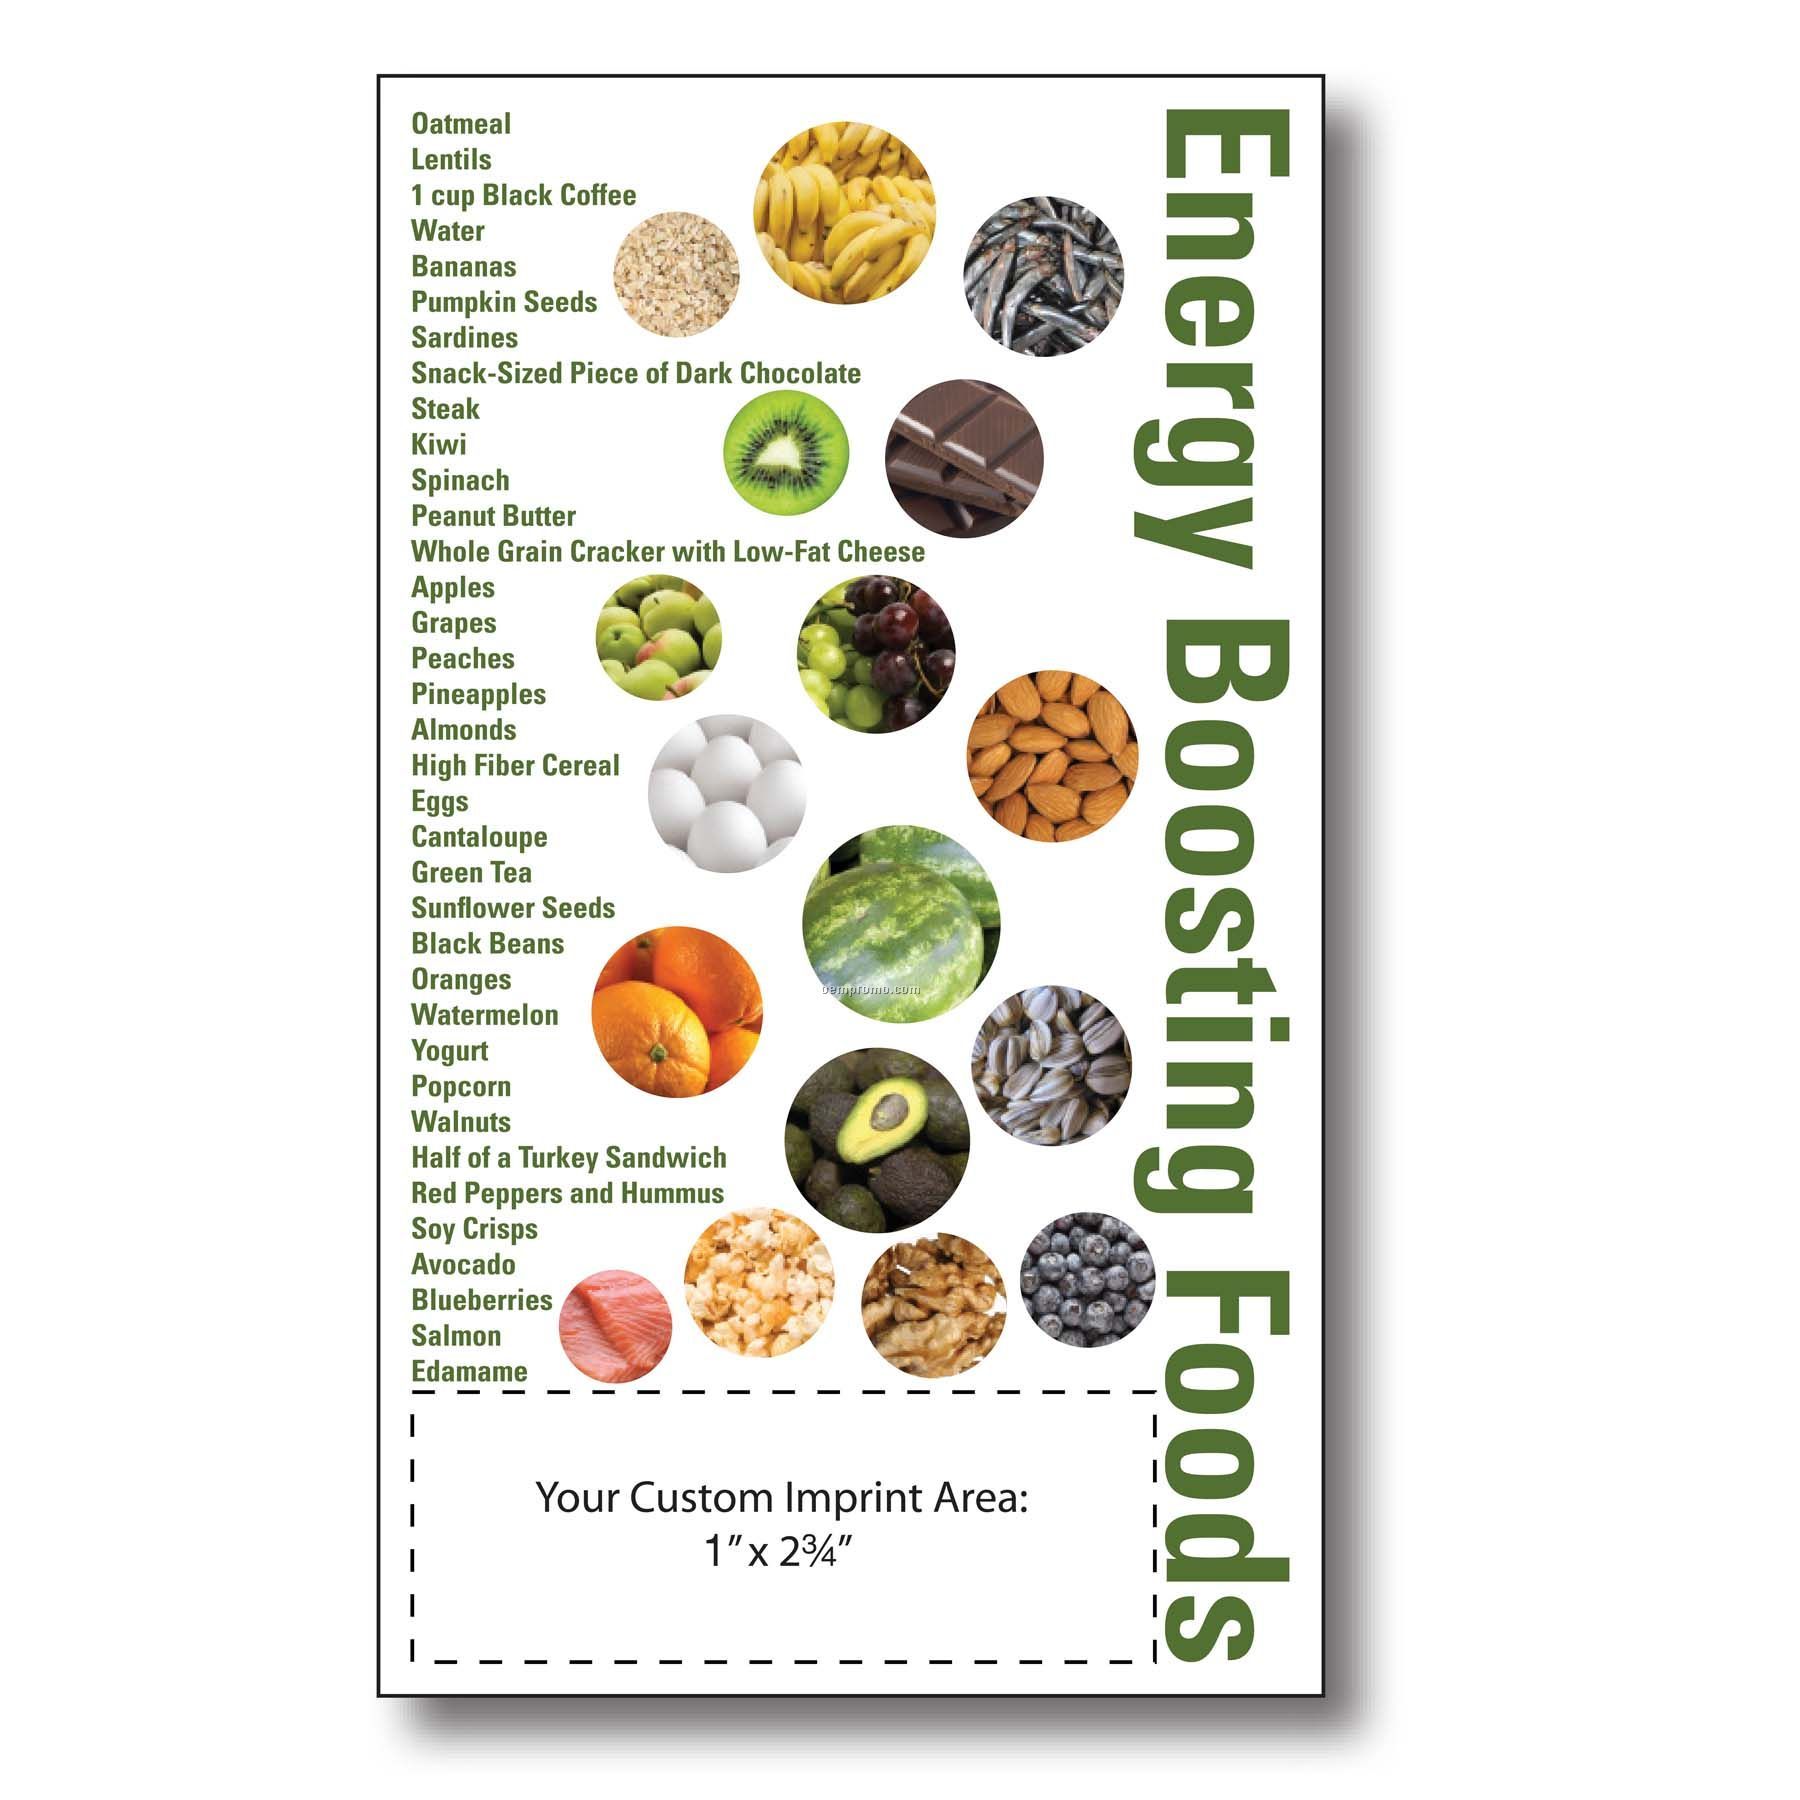 Energy Boosting Foods